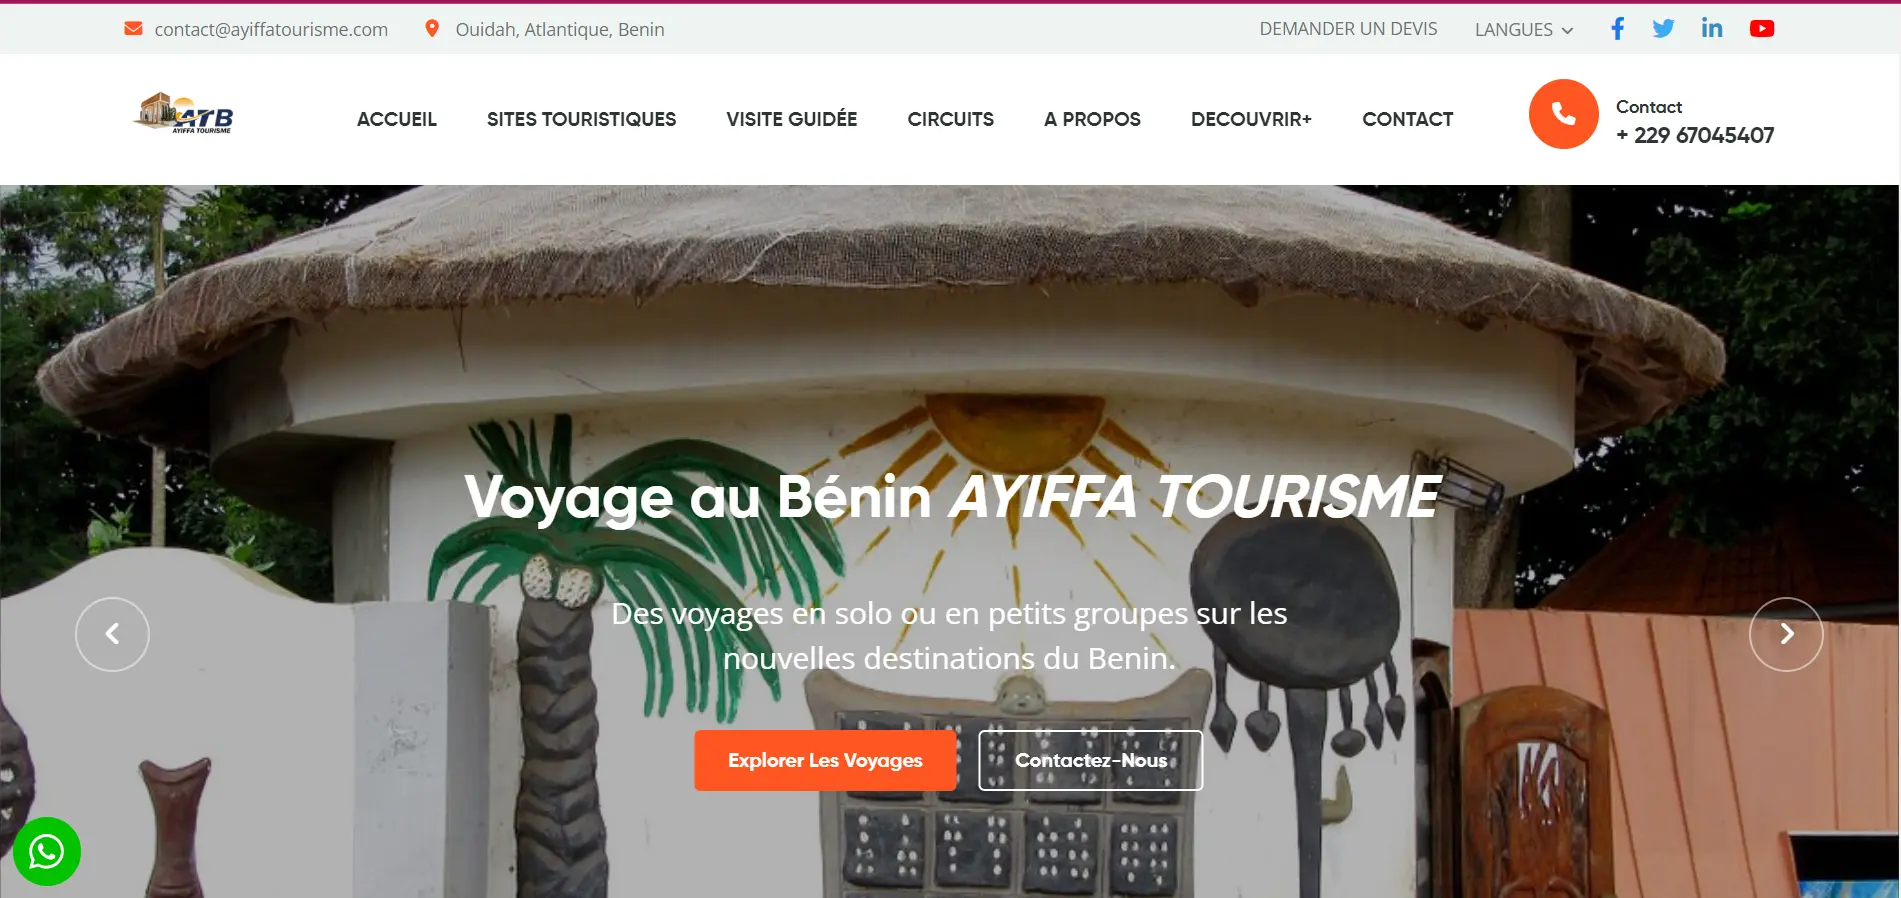 Ayiffa Tourisme: Site Vitrine d'une agence de tourisme guide touristique